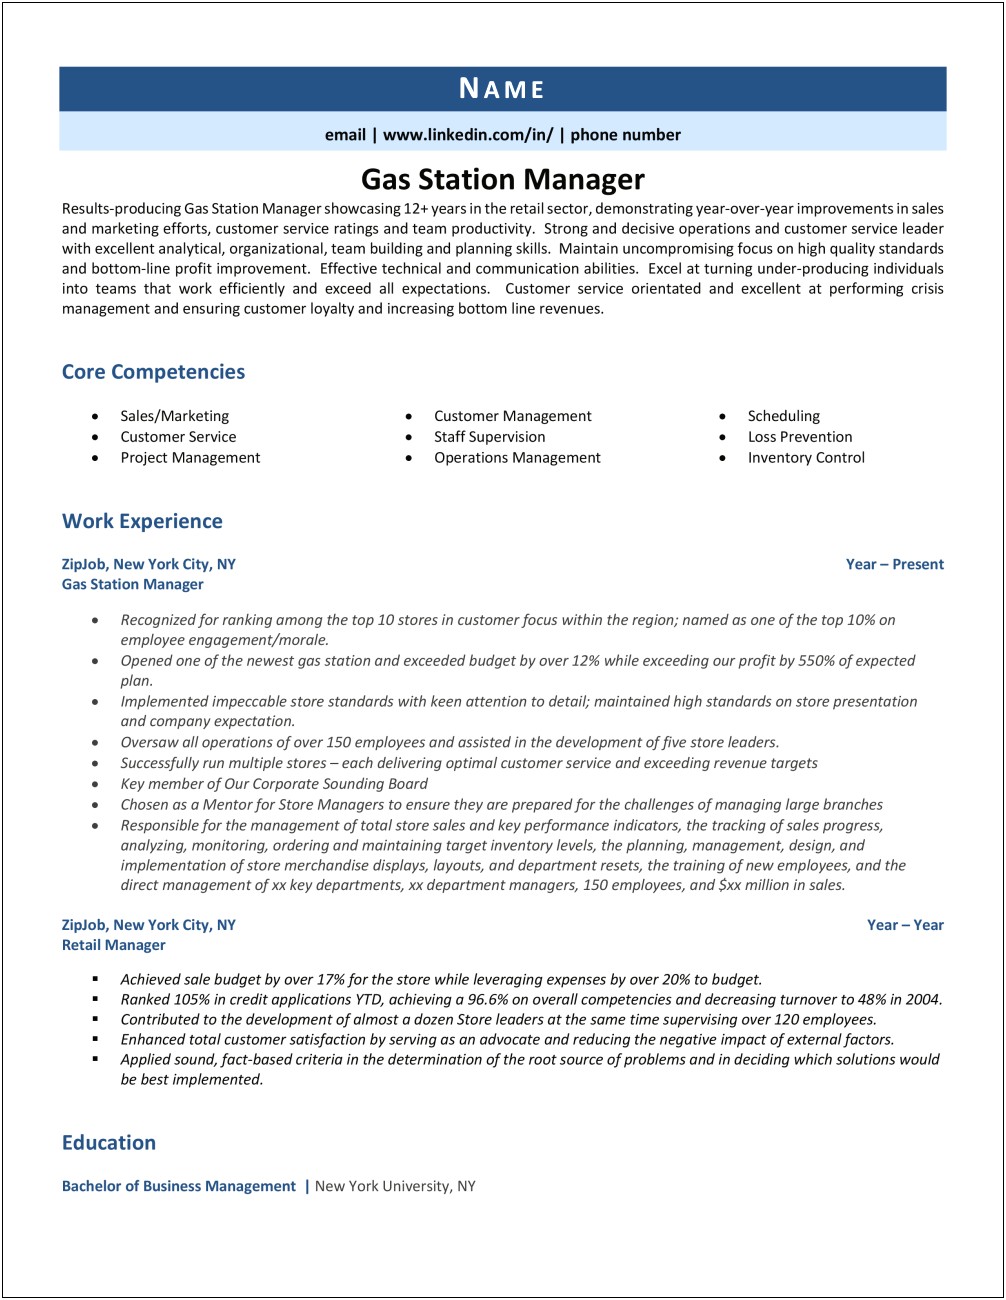 Gas Station Manager Description Resume